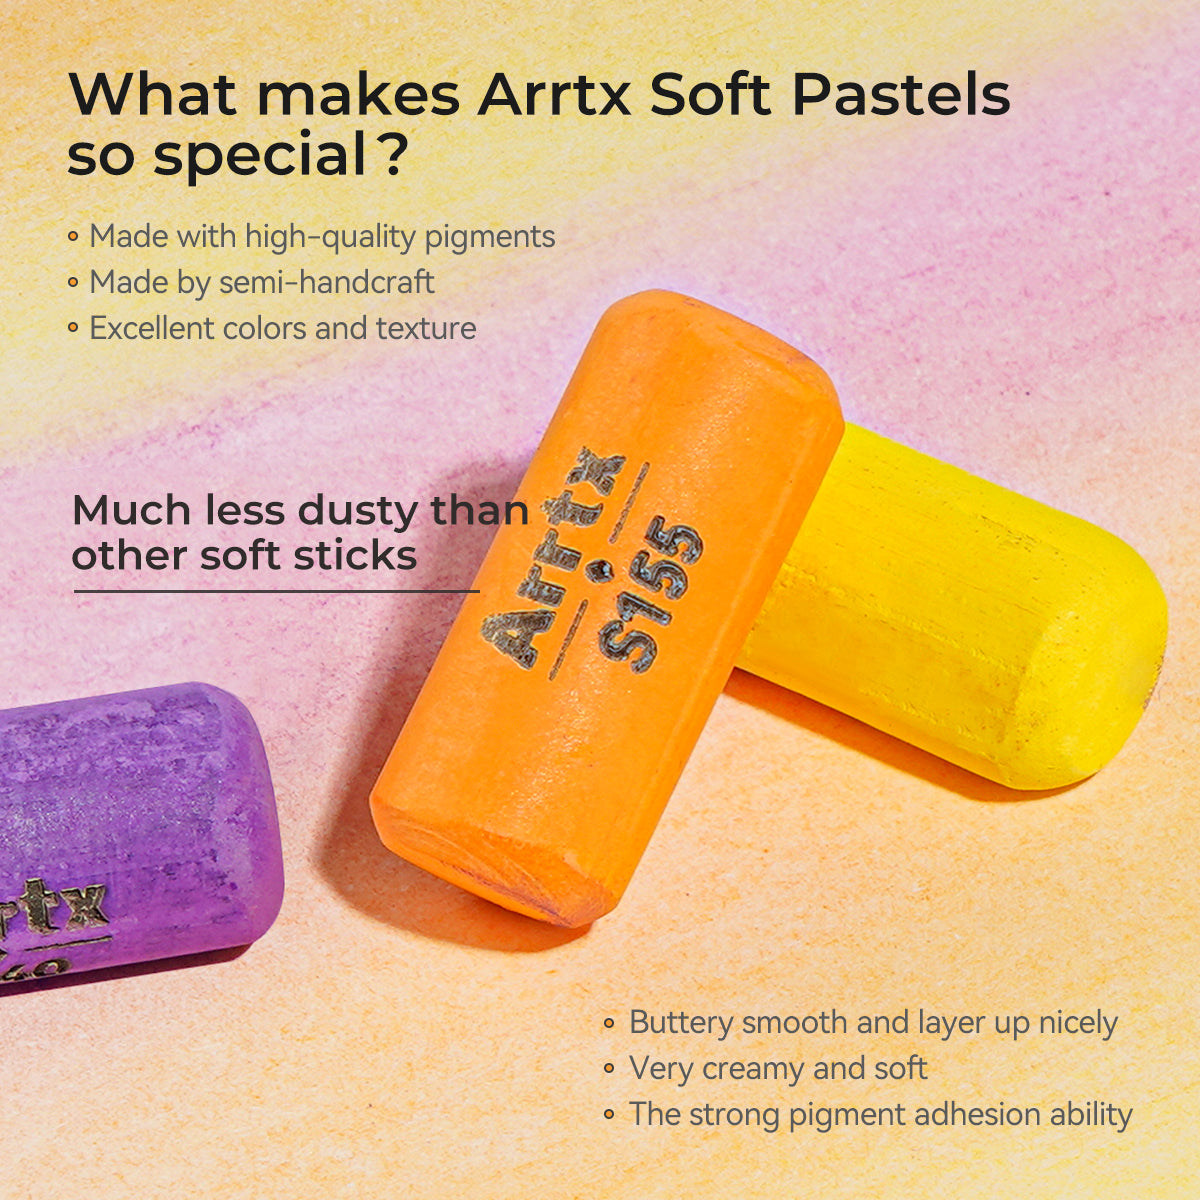 Arrtx 48 Colors Soft Pastels Set Pastels Drawing